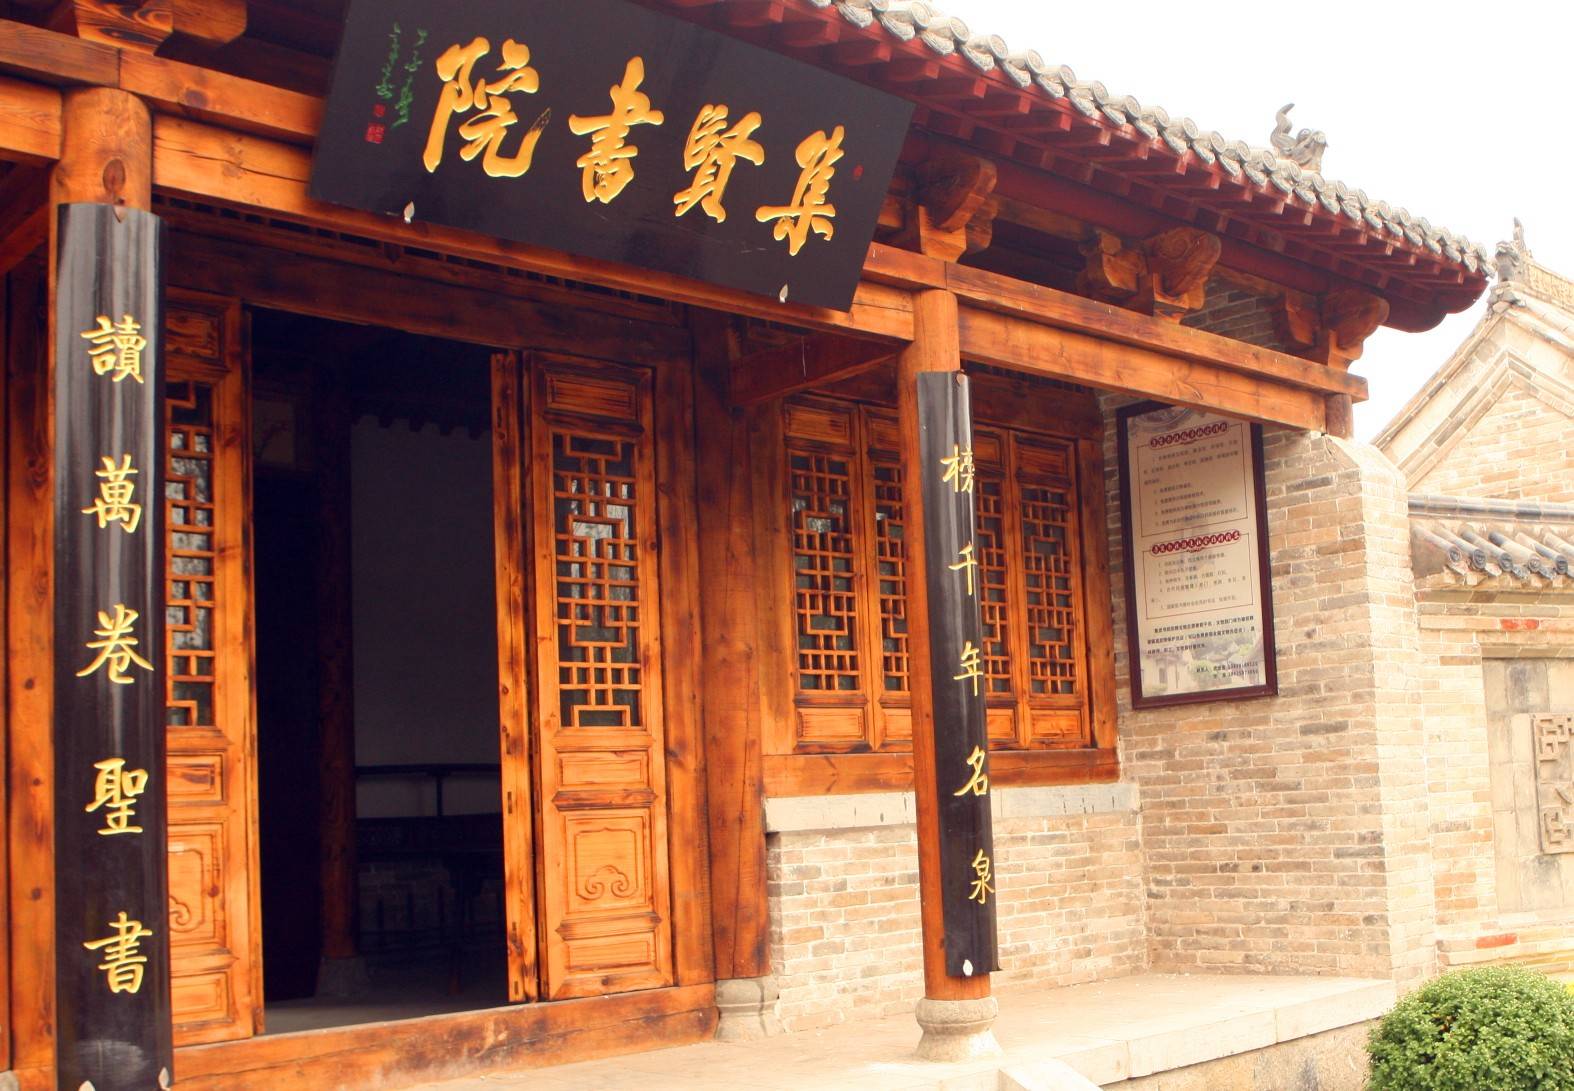 原创古代书院发展简史诞生与唐朝成熟与宋朝衰亡于清朝